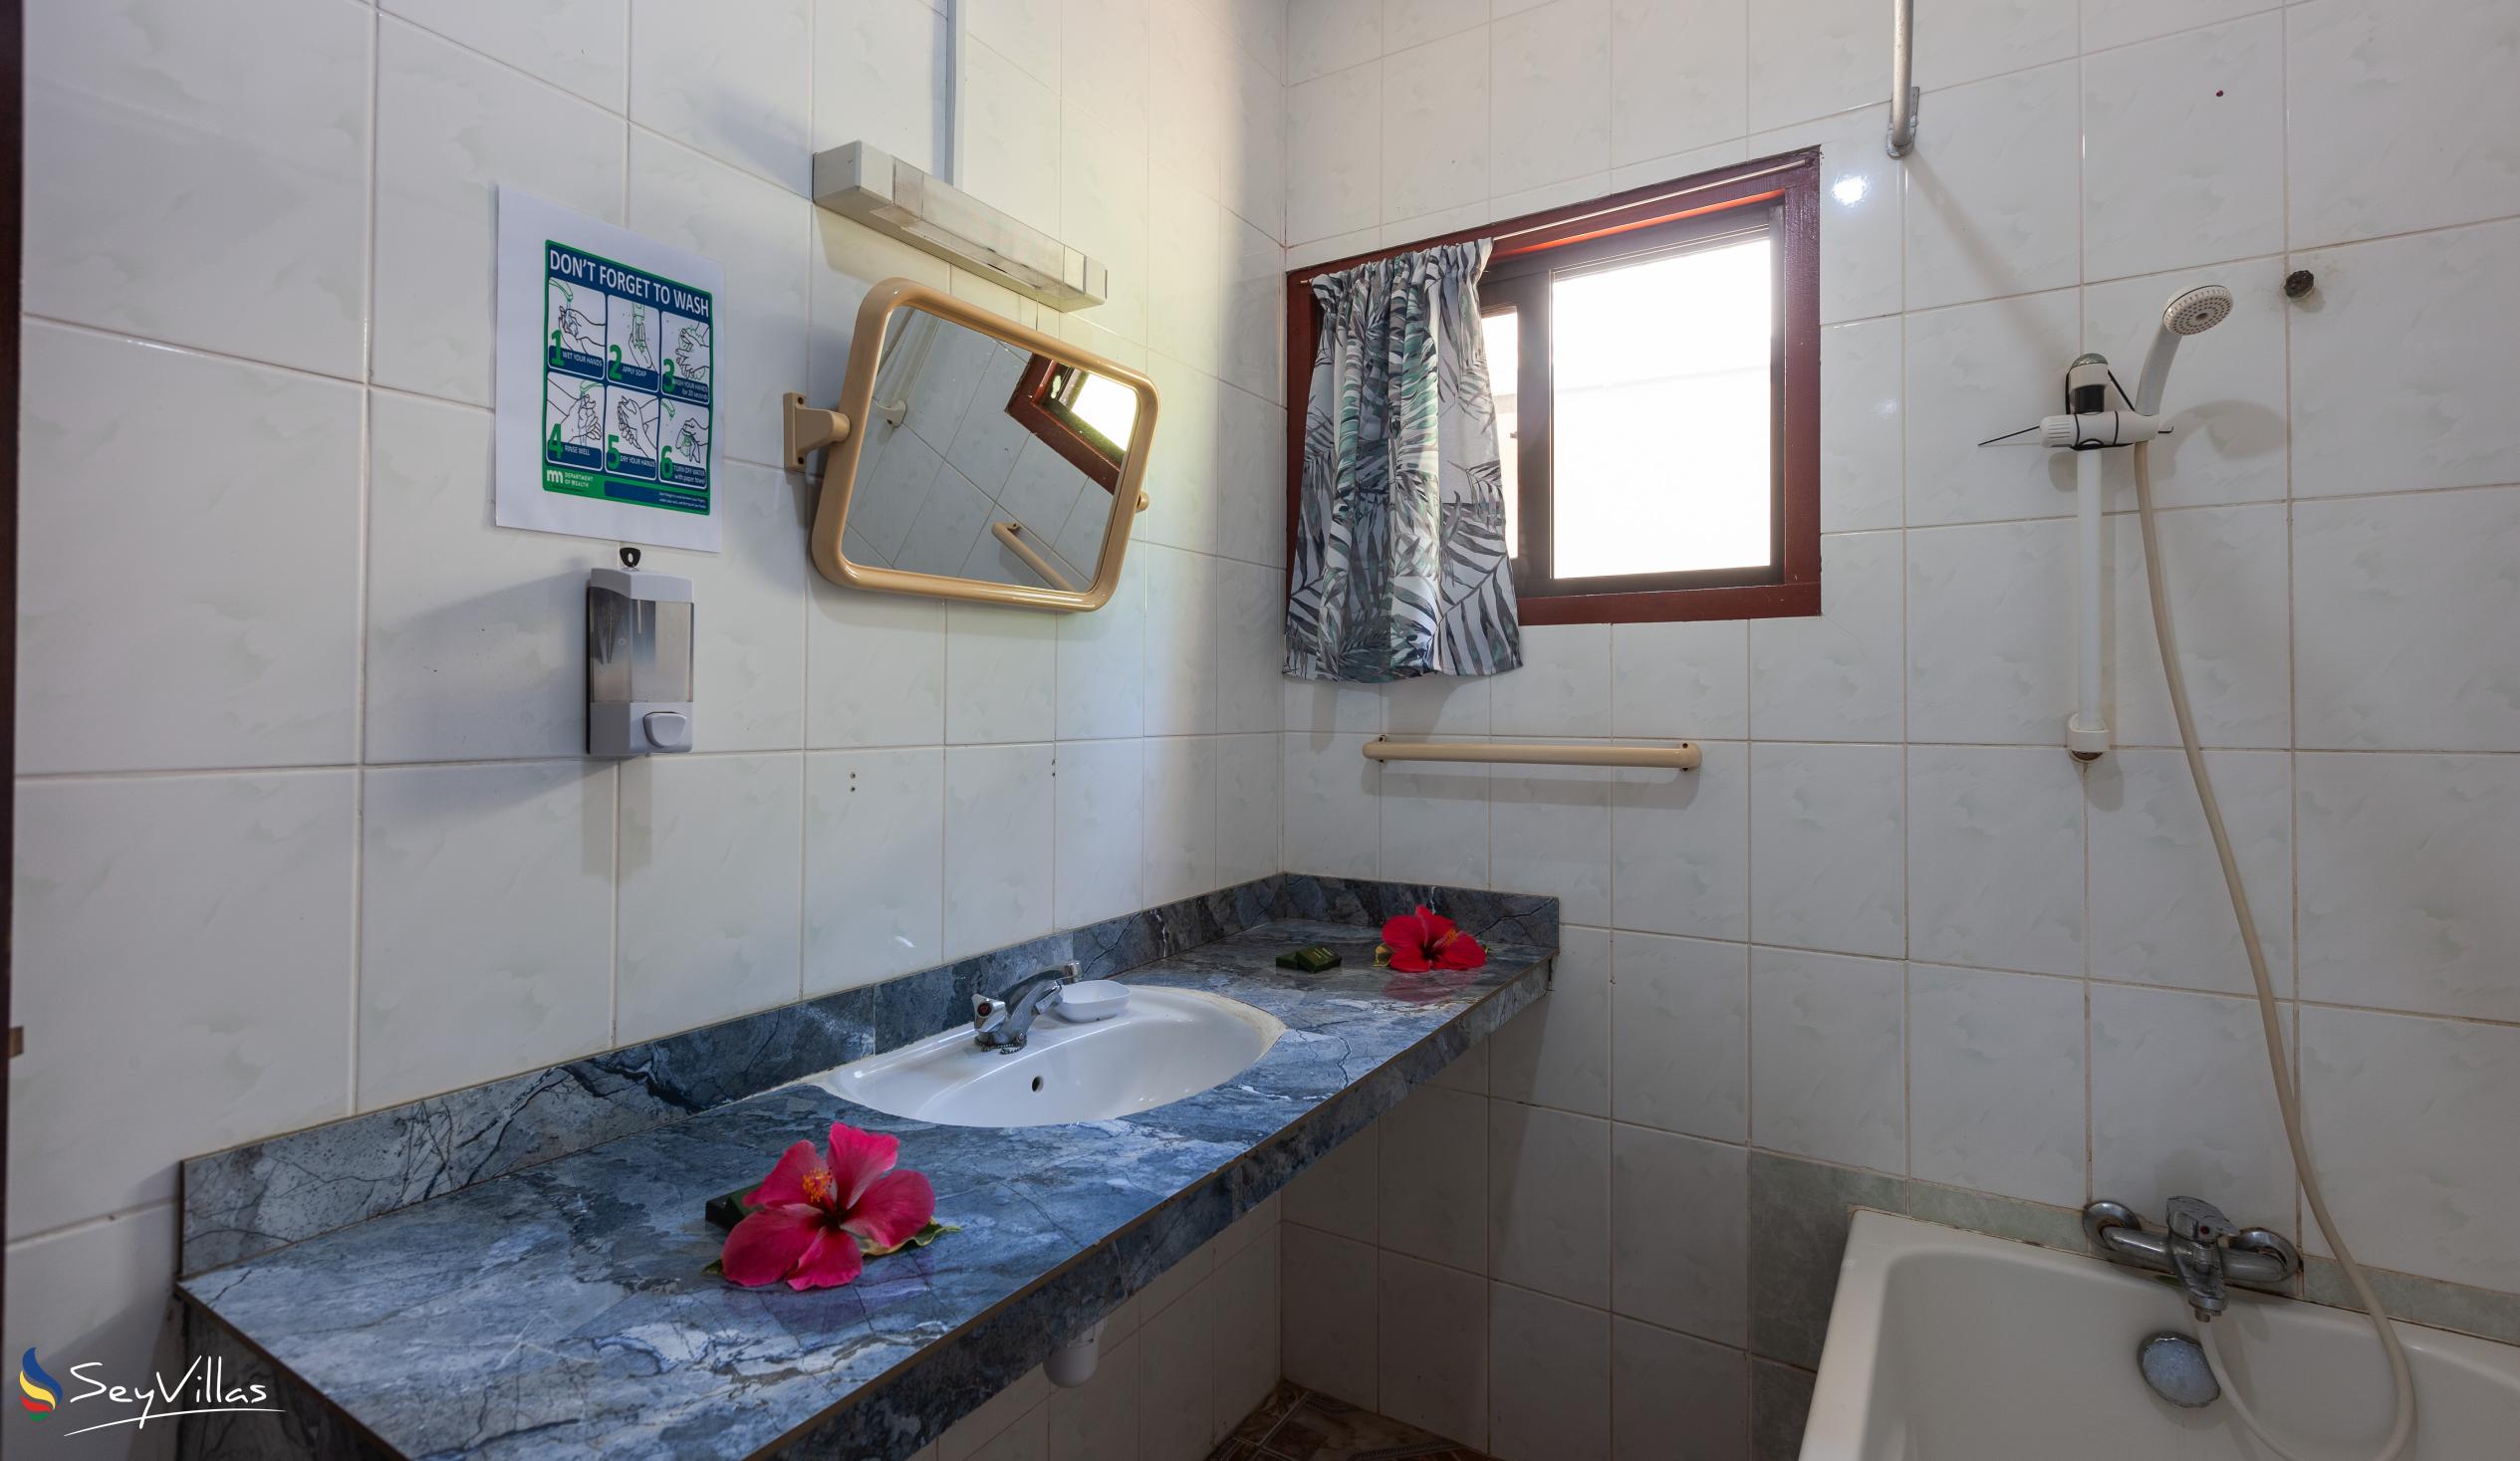 Photo 47: Dan Kazou - 2-Bedroom Apartment - La Digue (Seychelles)